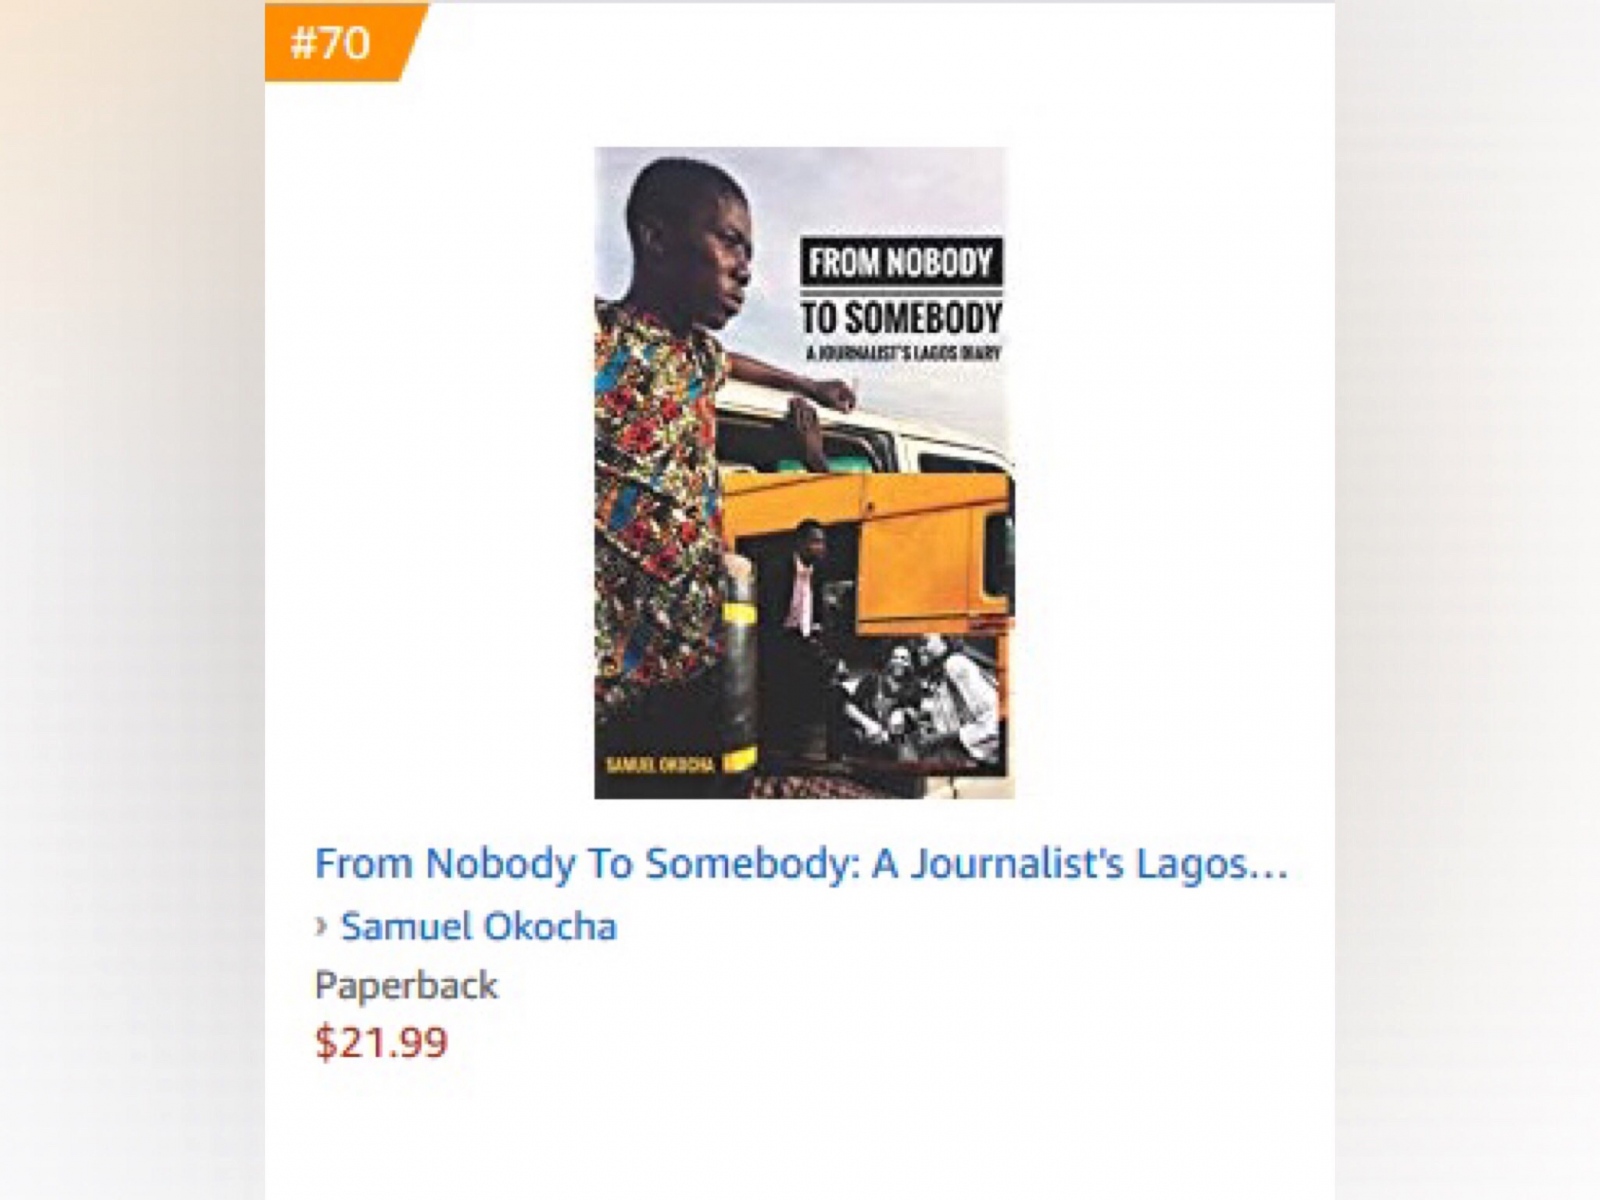 TOP 1OO Amazon Best Sellers